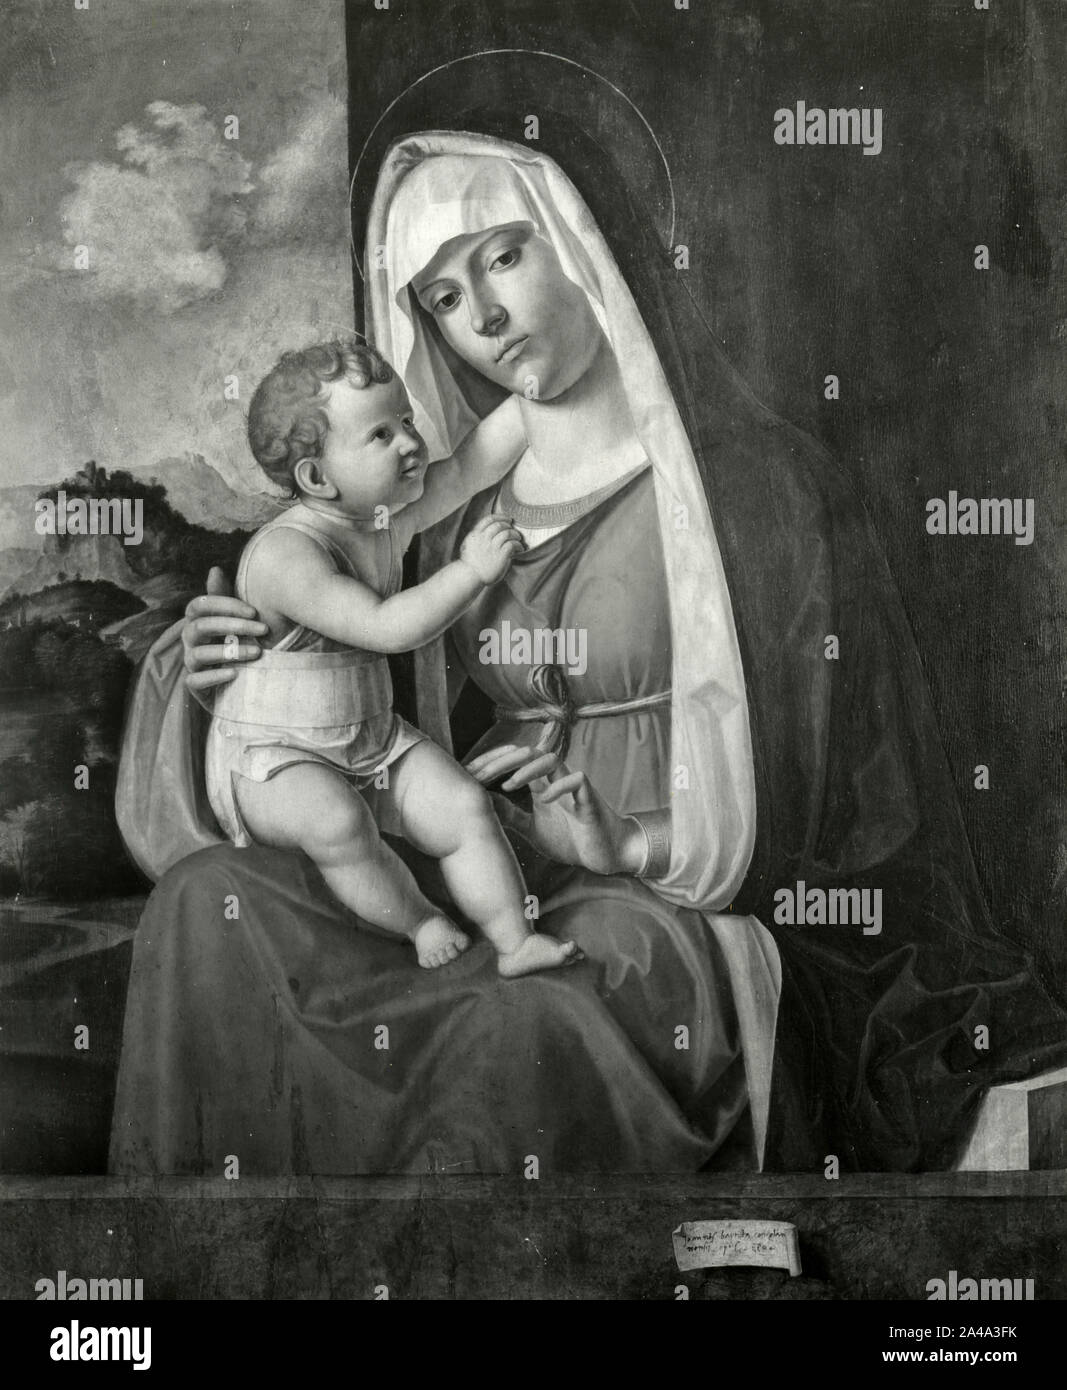 Madonna with Baby Jesus, painting by Italian artist Giovanni Battista Cima da Conegliano, 1960s Stock Photo